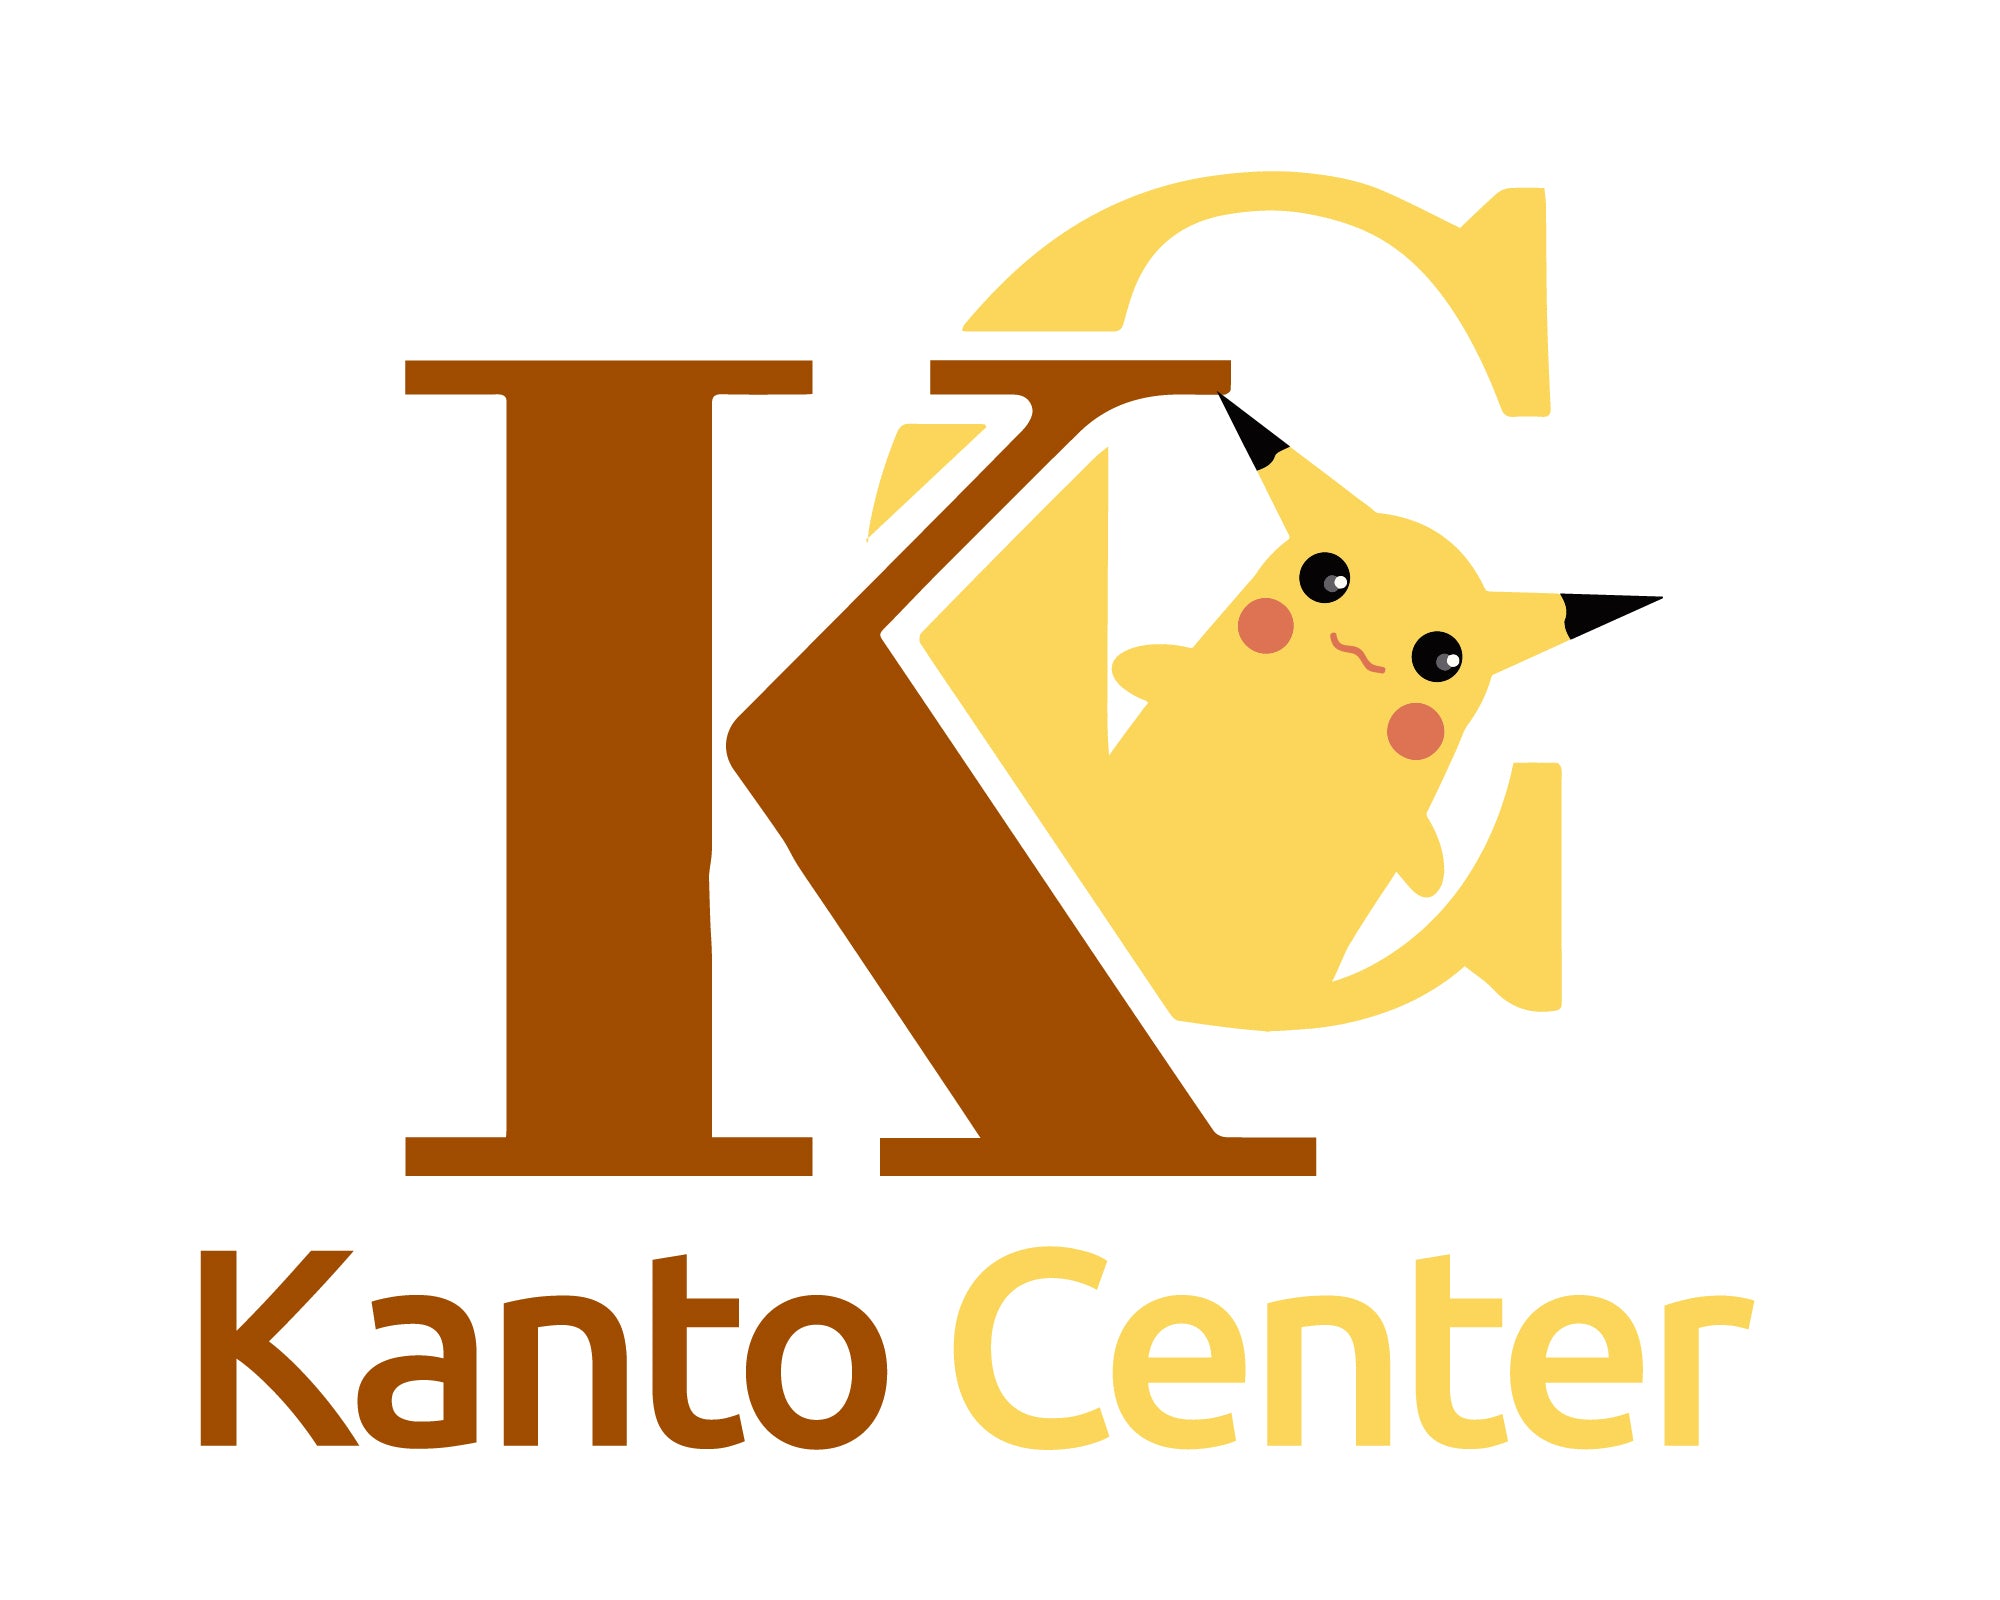 The Kanto Center